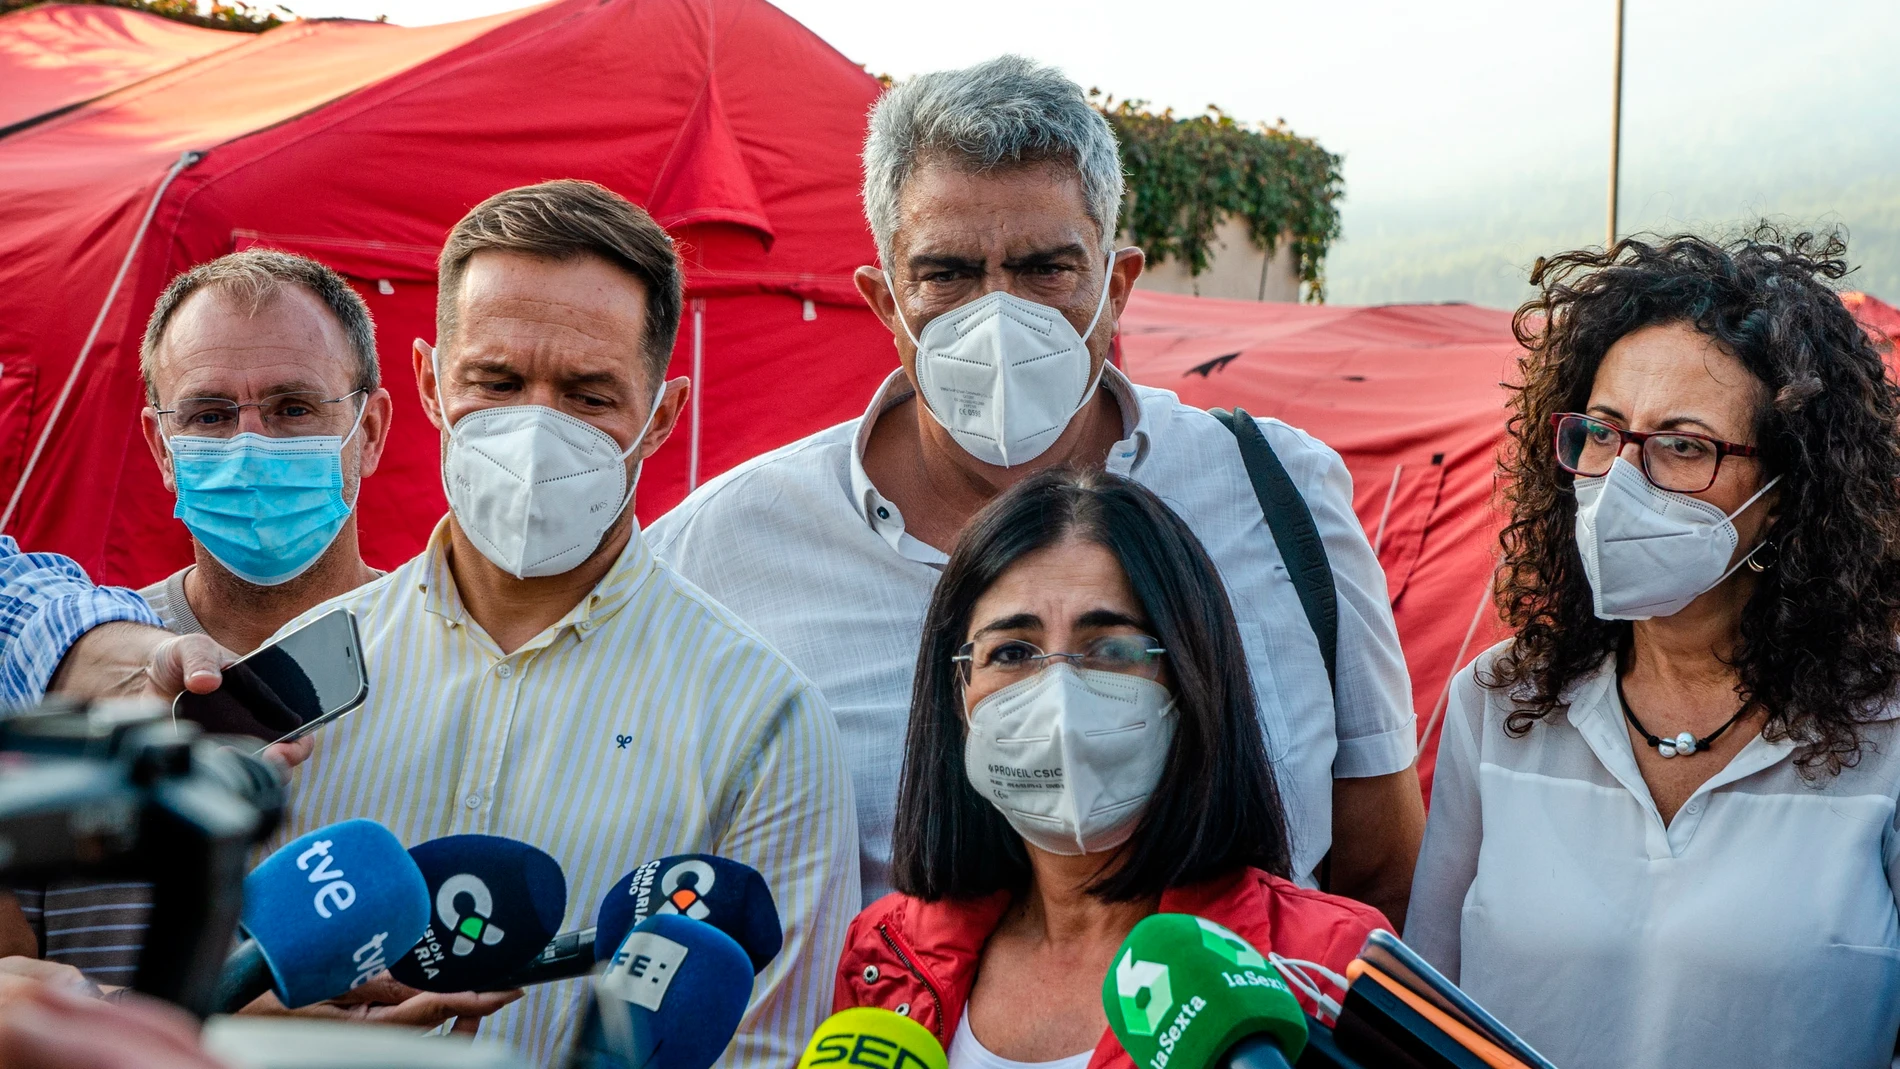 La ministra de Sanidad visita en La Palma la zona afectada por la erupción